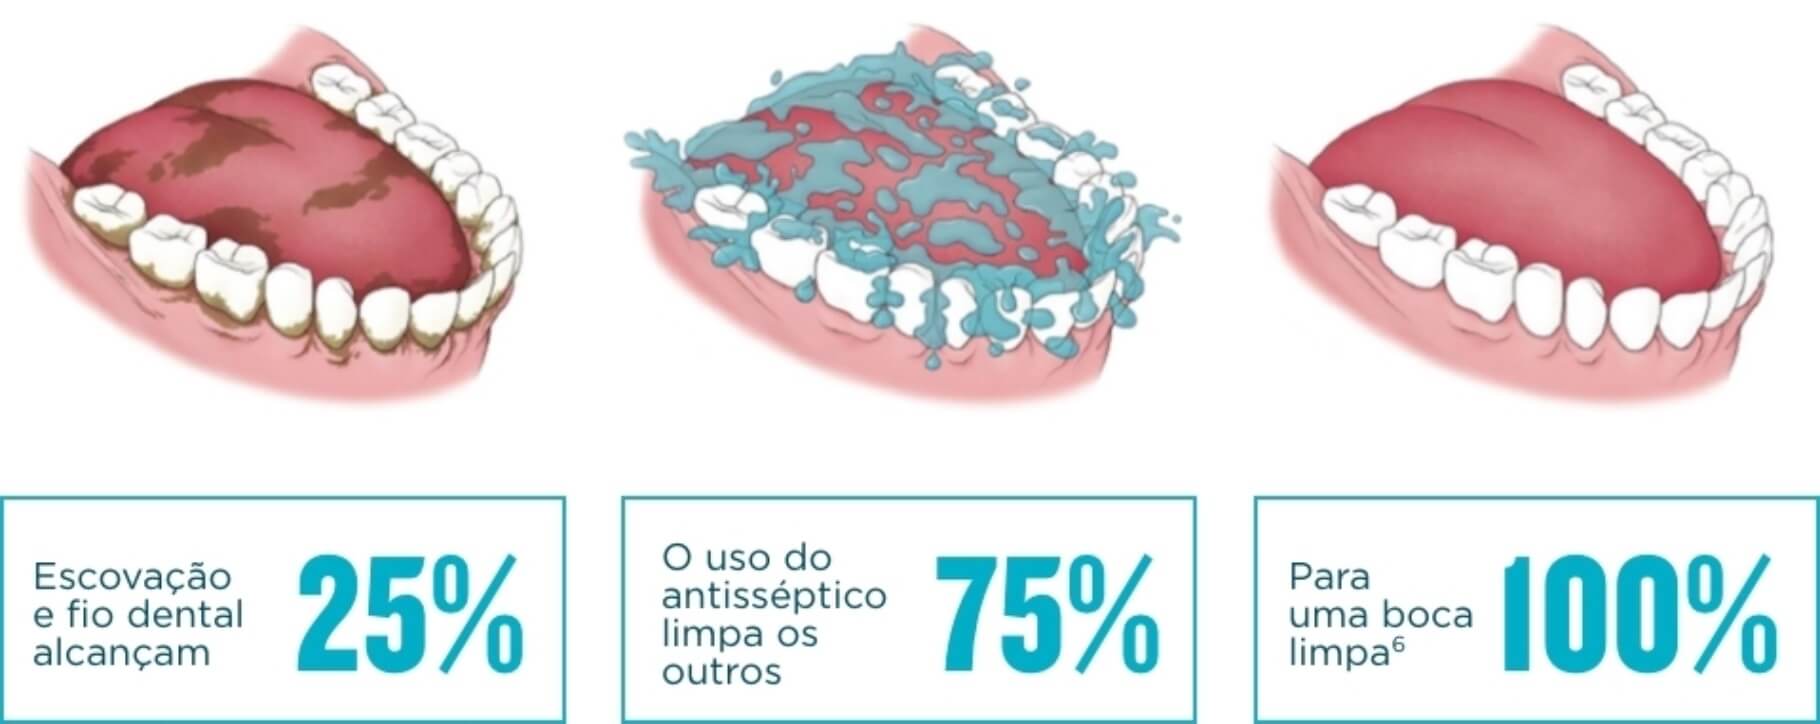 Ilustração de limpeza da boca| Odontologia | J&J